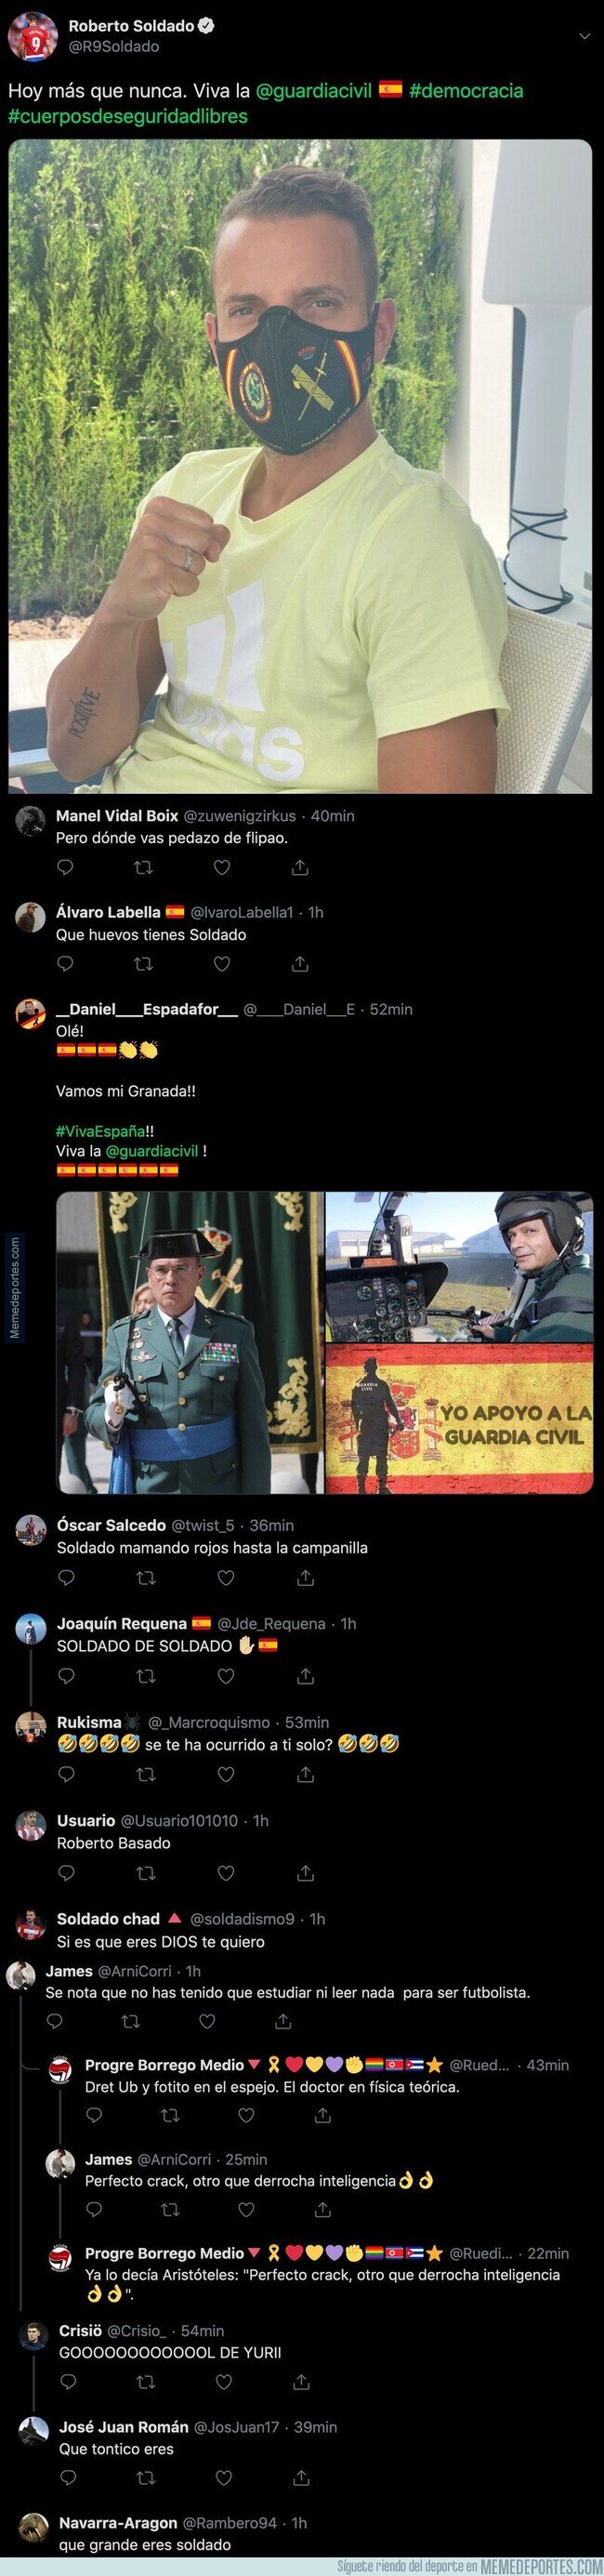 1105267 - Roberto Soldado la lía en Twitter subiendo esta foto con una mascarilla apoyando a la Guardia Civil